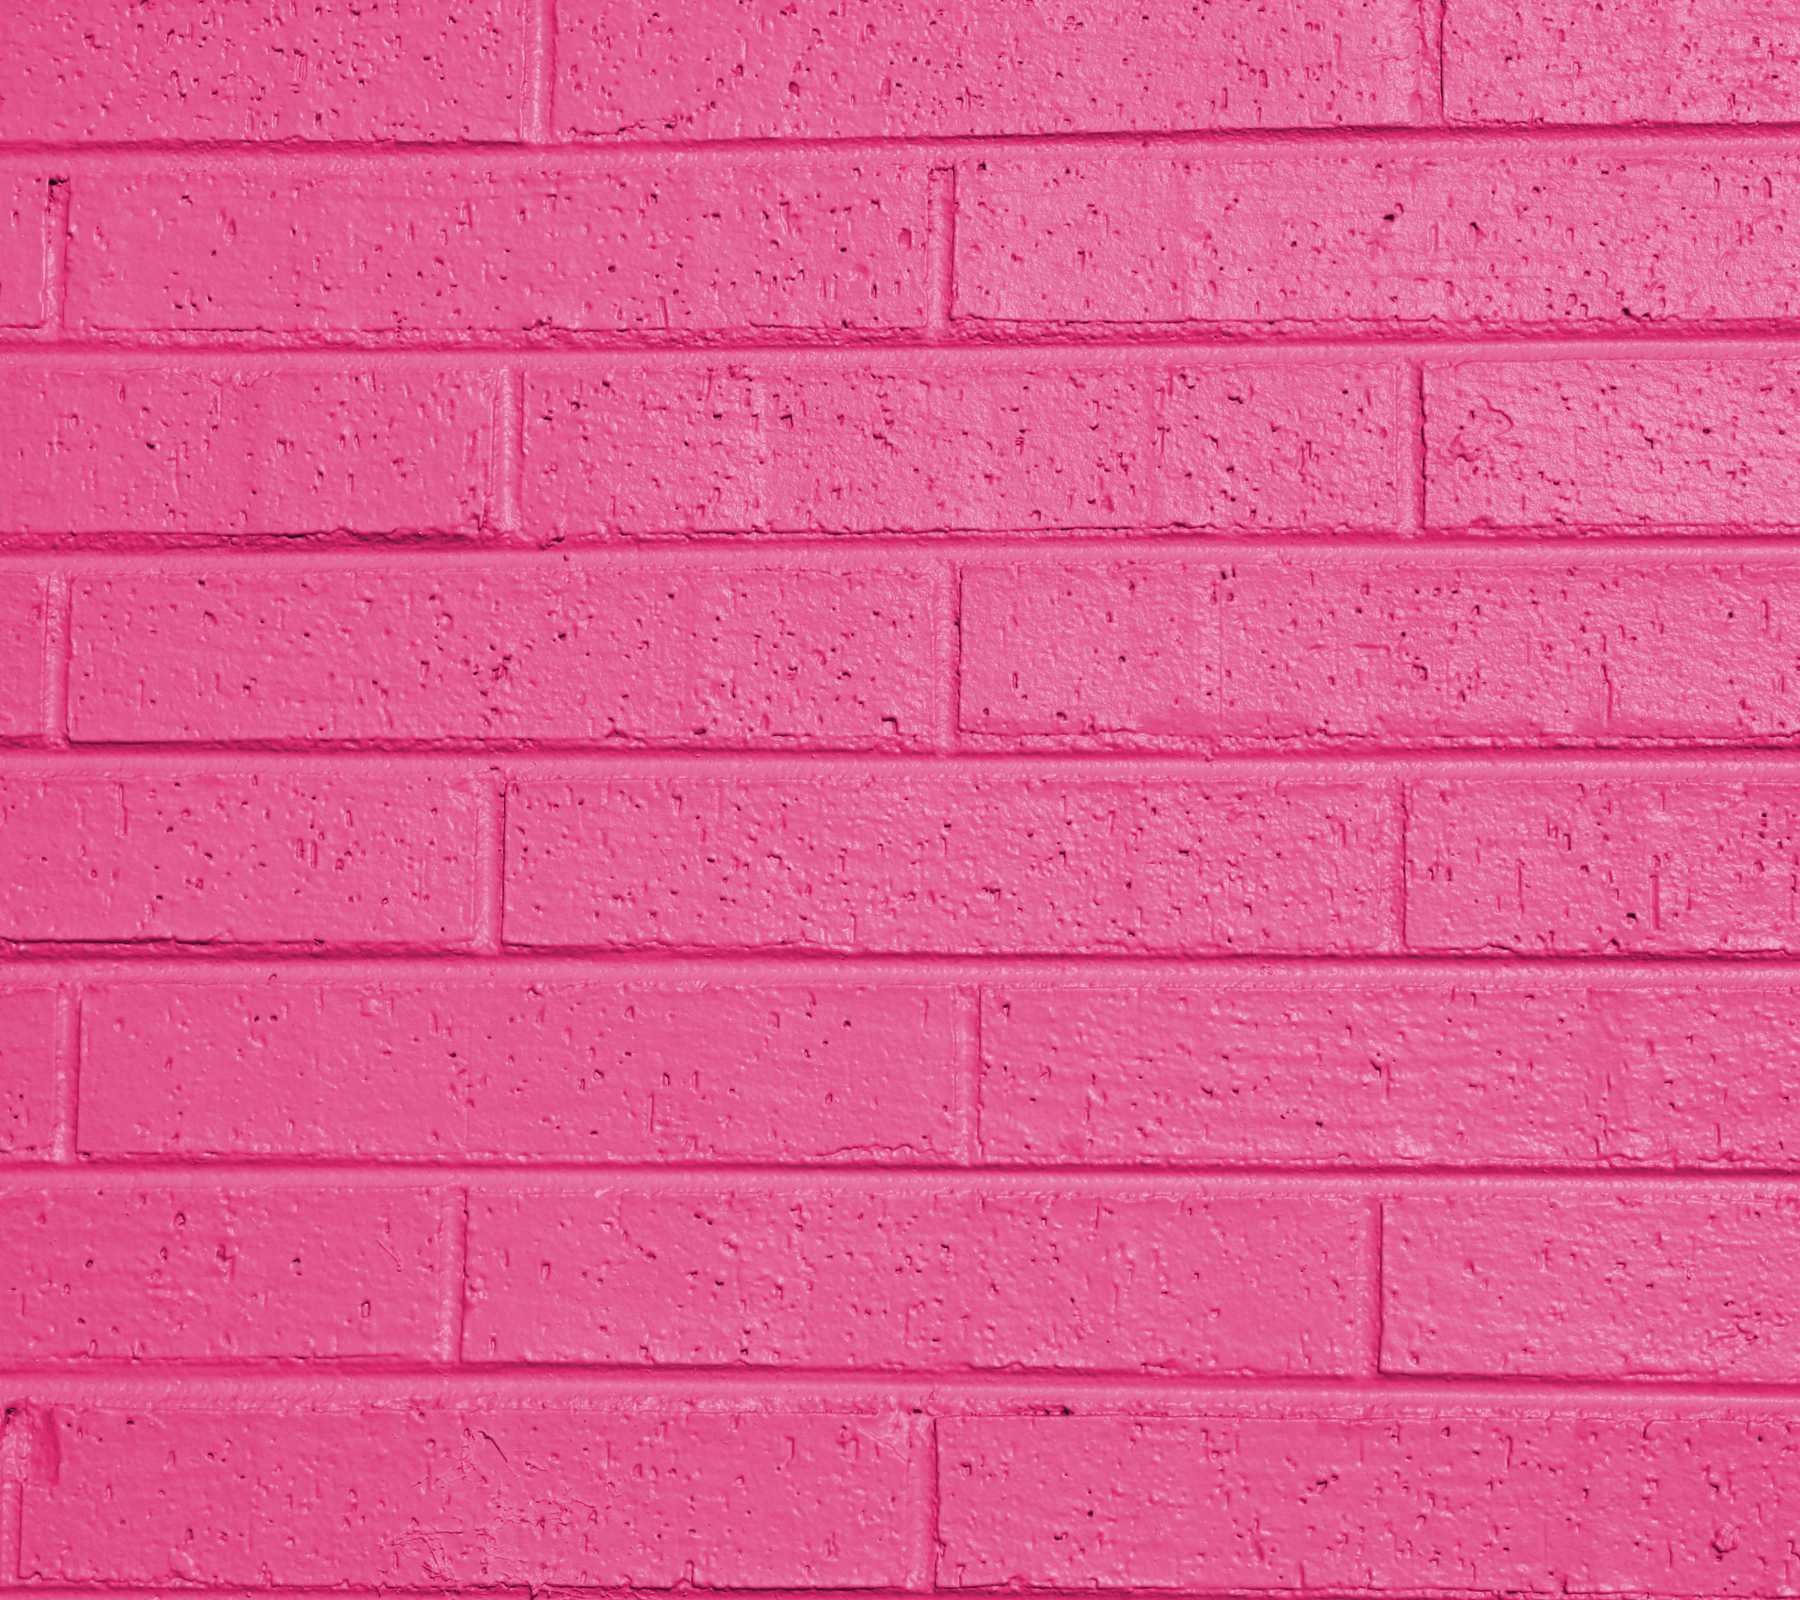 Hot pink wallpaper